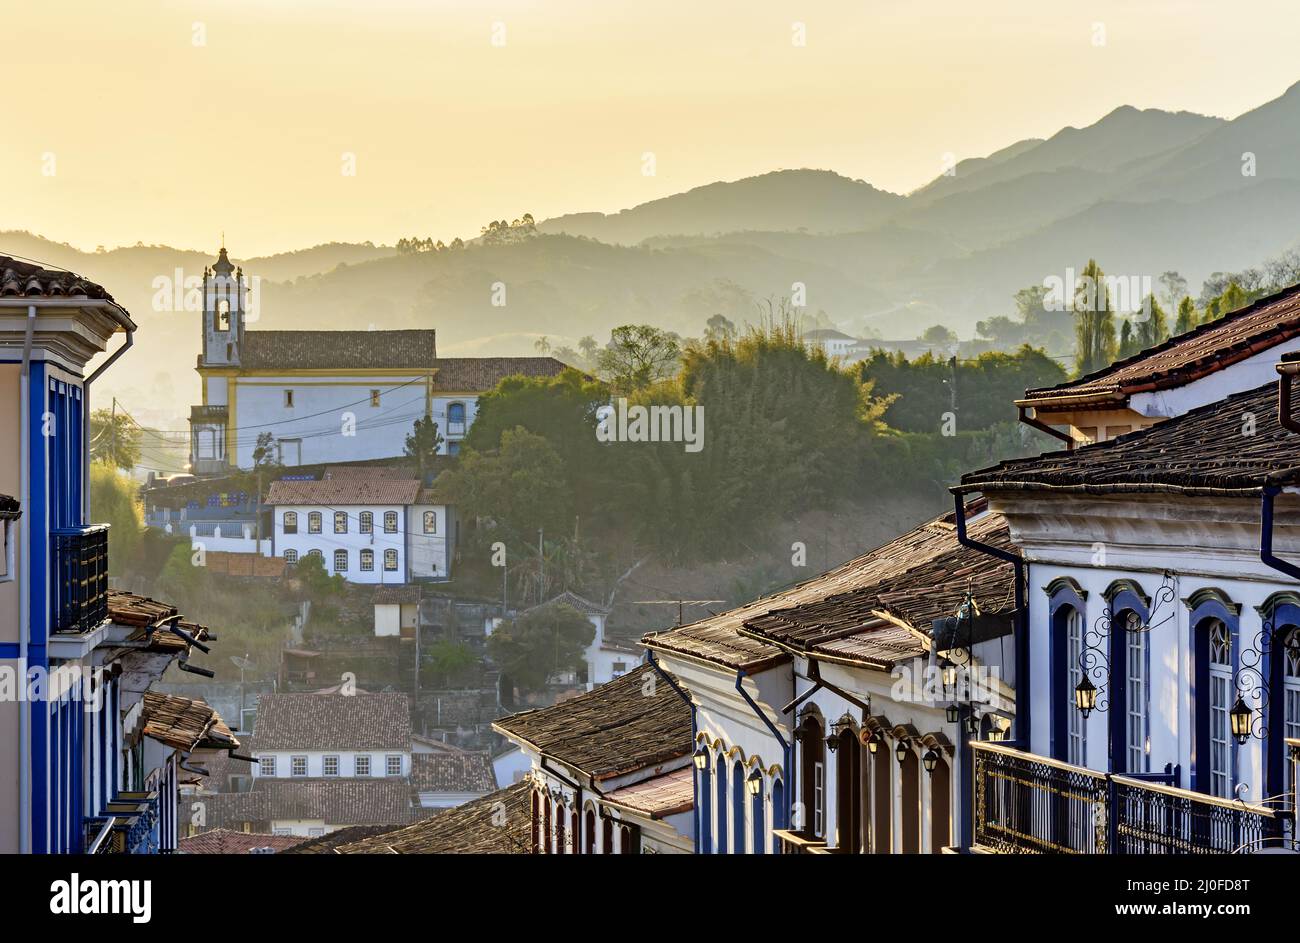 Fachadas de casas e iglesias de arquitectura colonial en una calle antigua de la ciudad de Ouro Preto Foto de stock